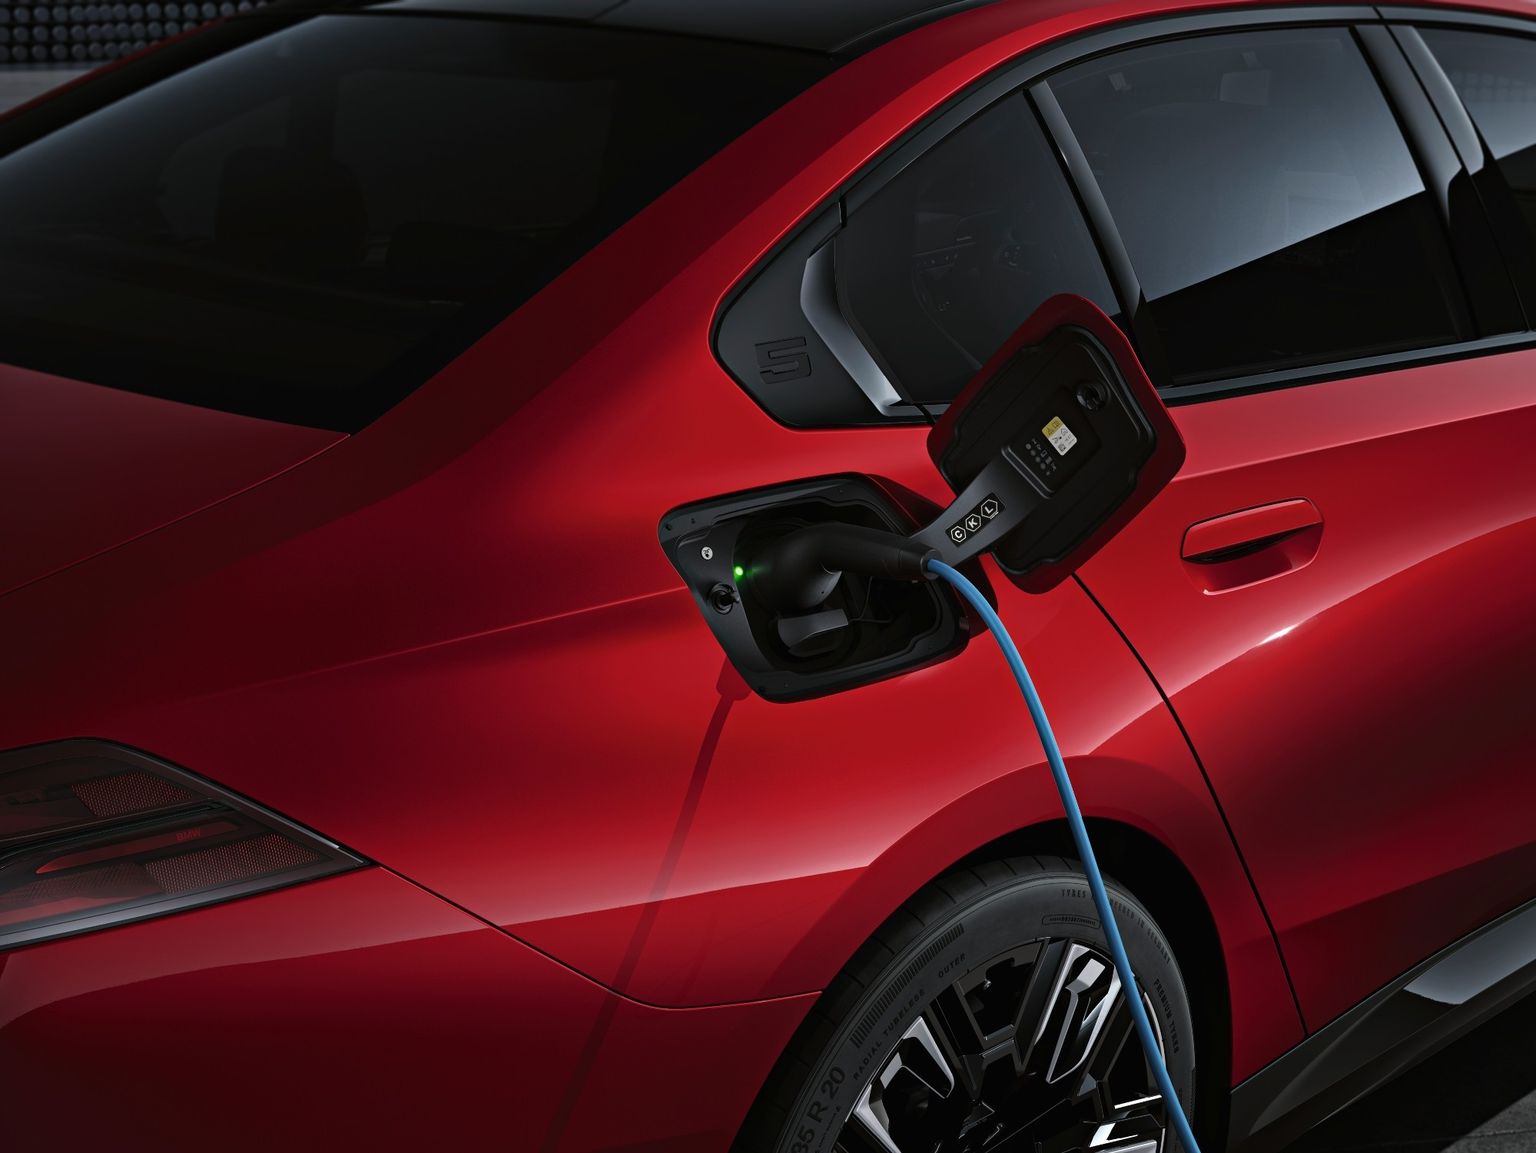 Kiirlaadijaga saab uue BMW elektrilise mudeli akut laadida umbes 30 minutiga 10 protsendilt 80 peale.